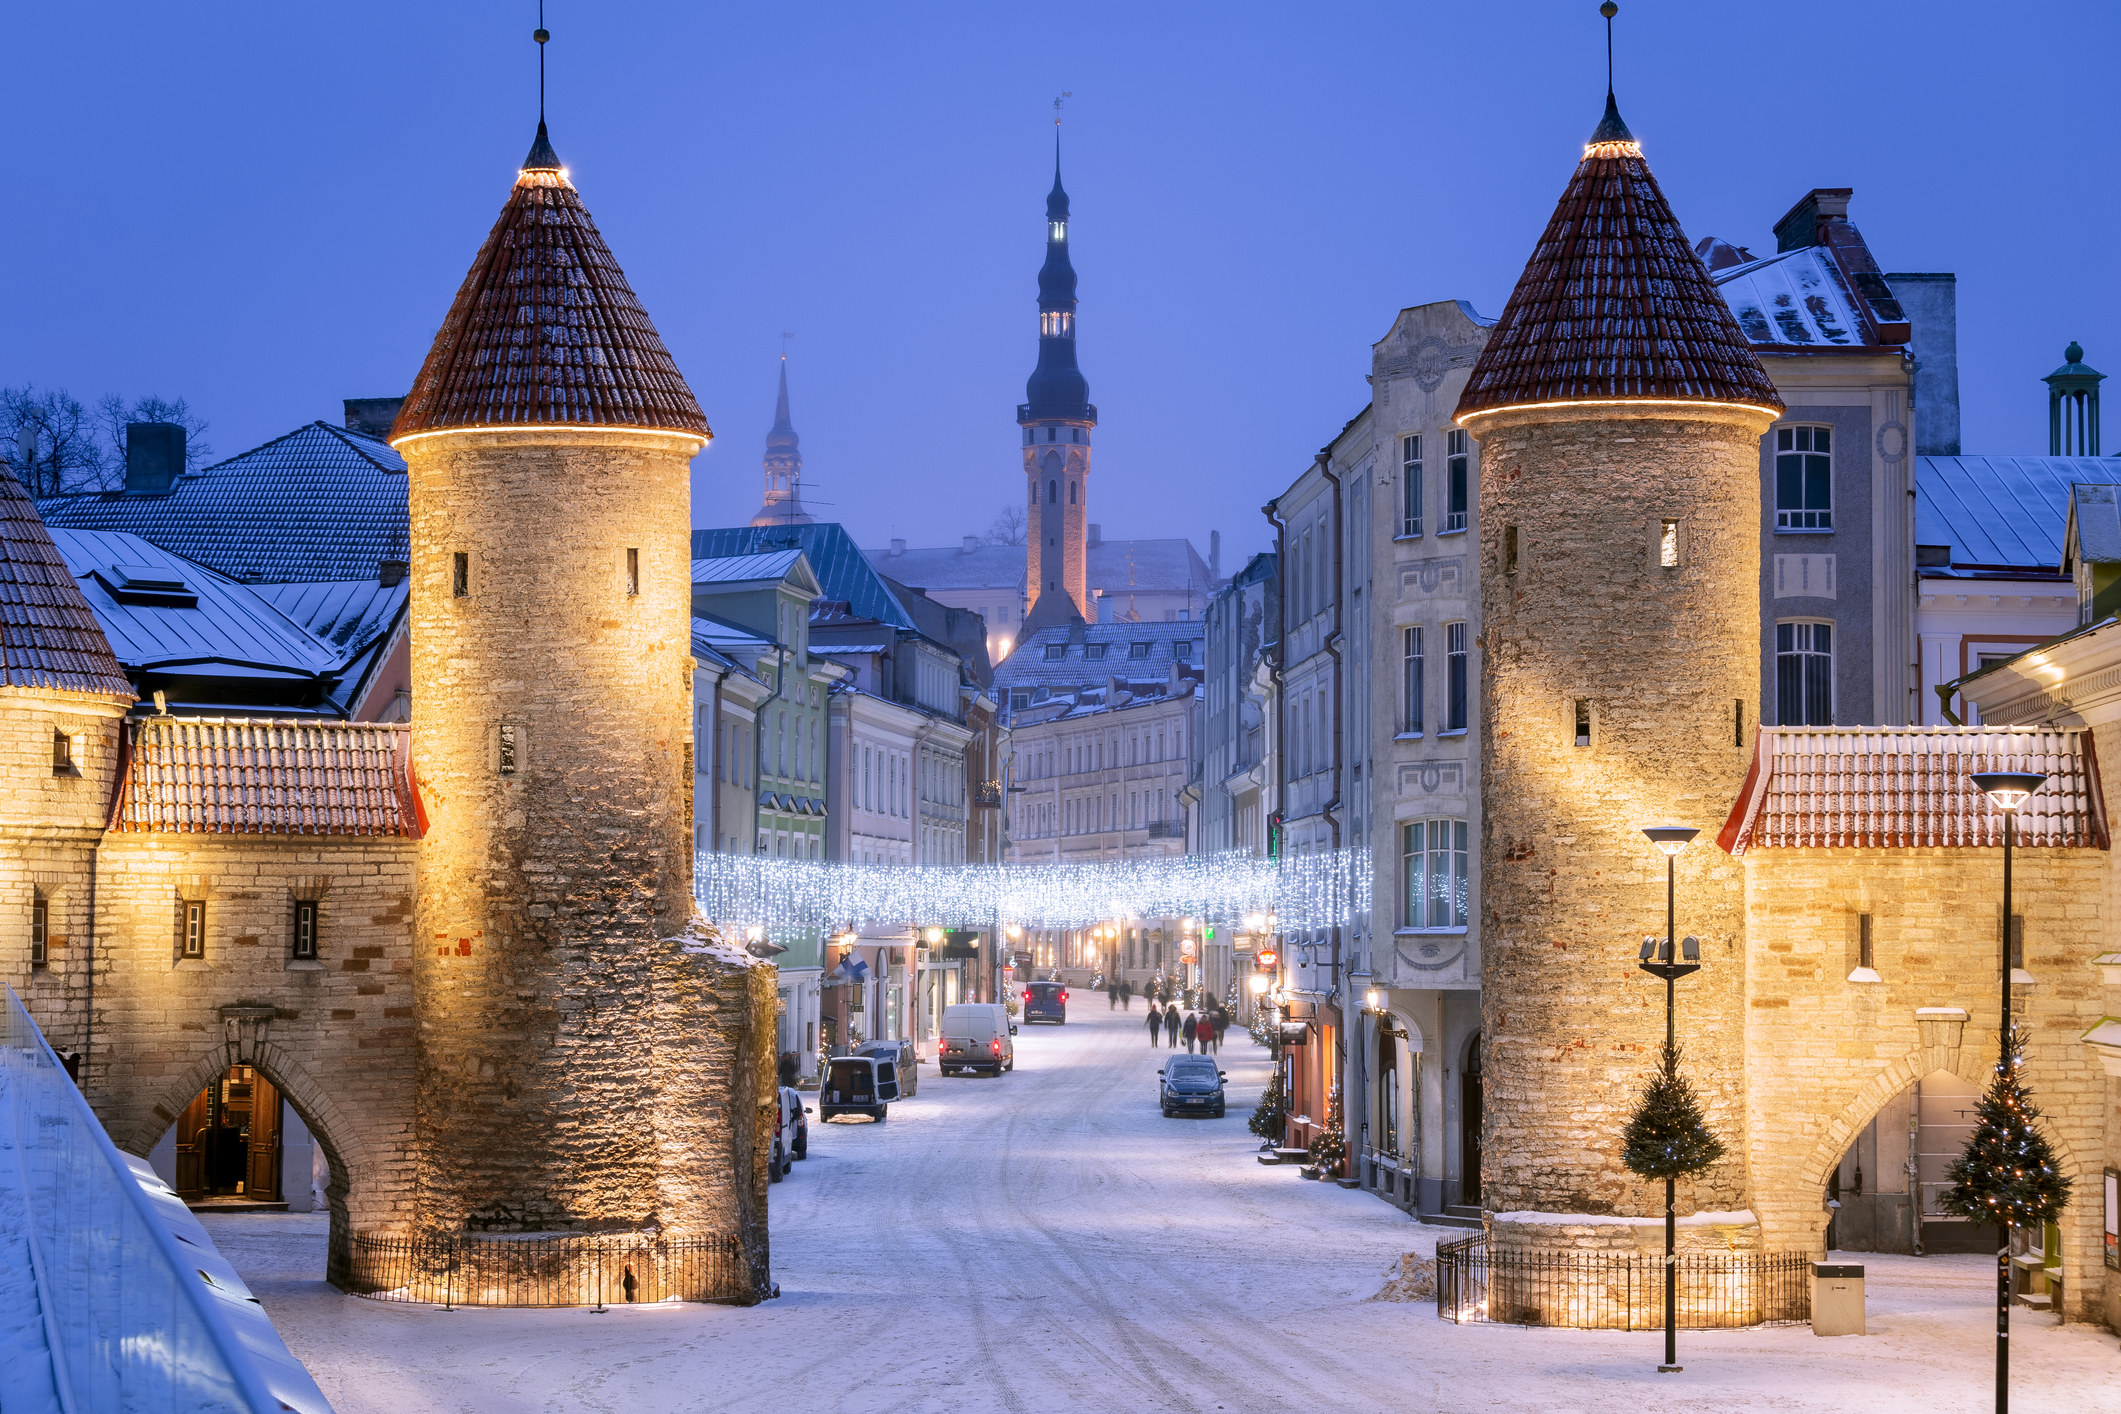 Snowfall in a European town